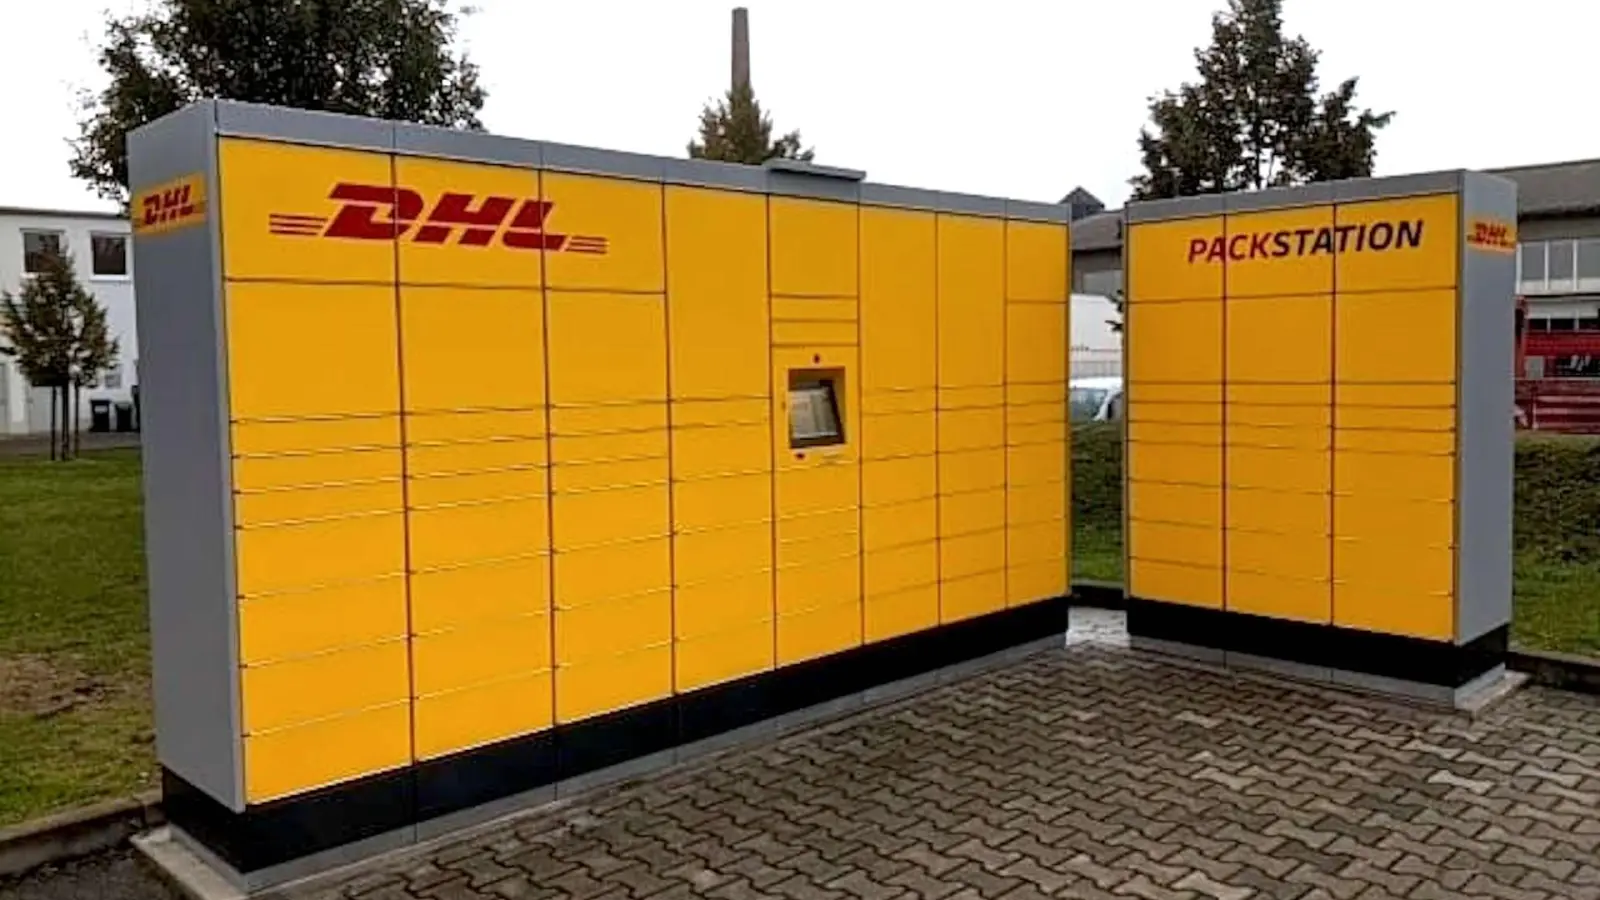 DHL errichtet Packstation in Taucha (Foto: taucha-kompakt.de)